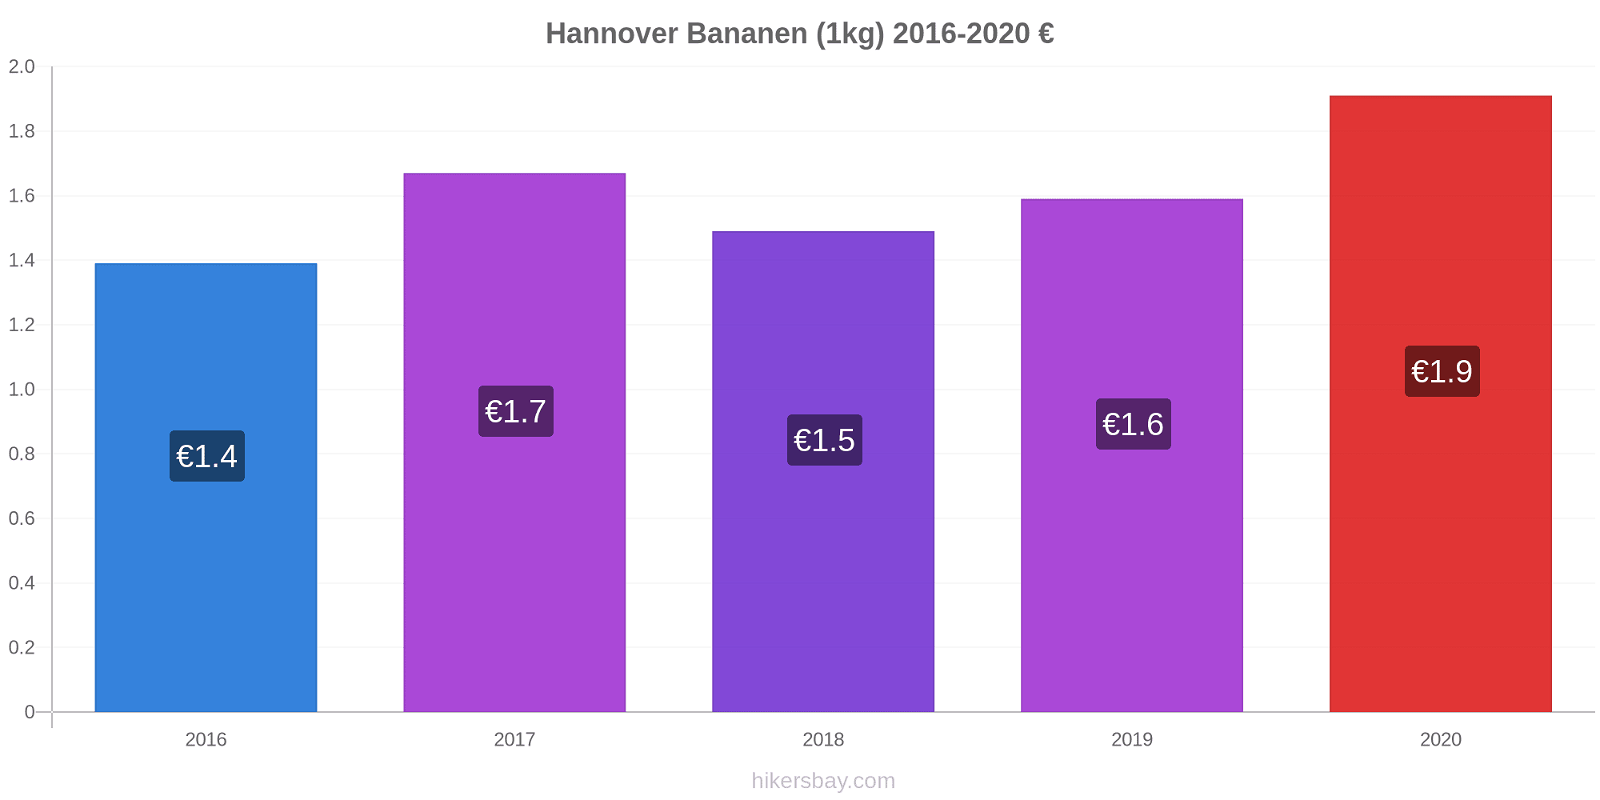 Hannover prijswijzigingen Banaan (1kg) hikersbay.com